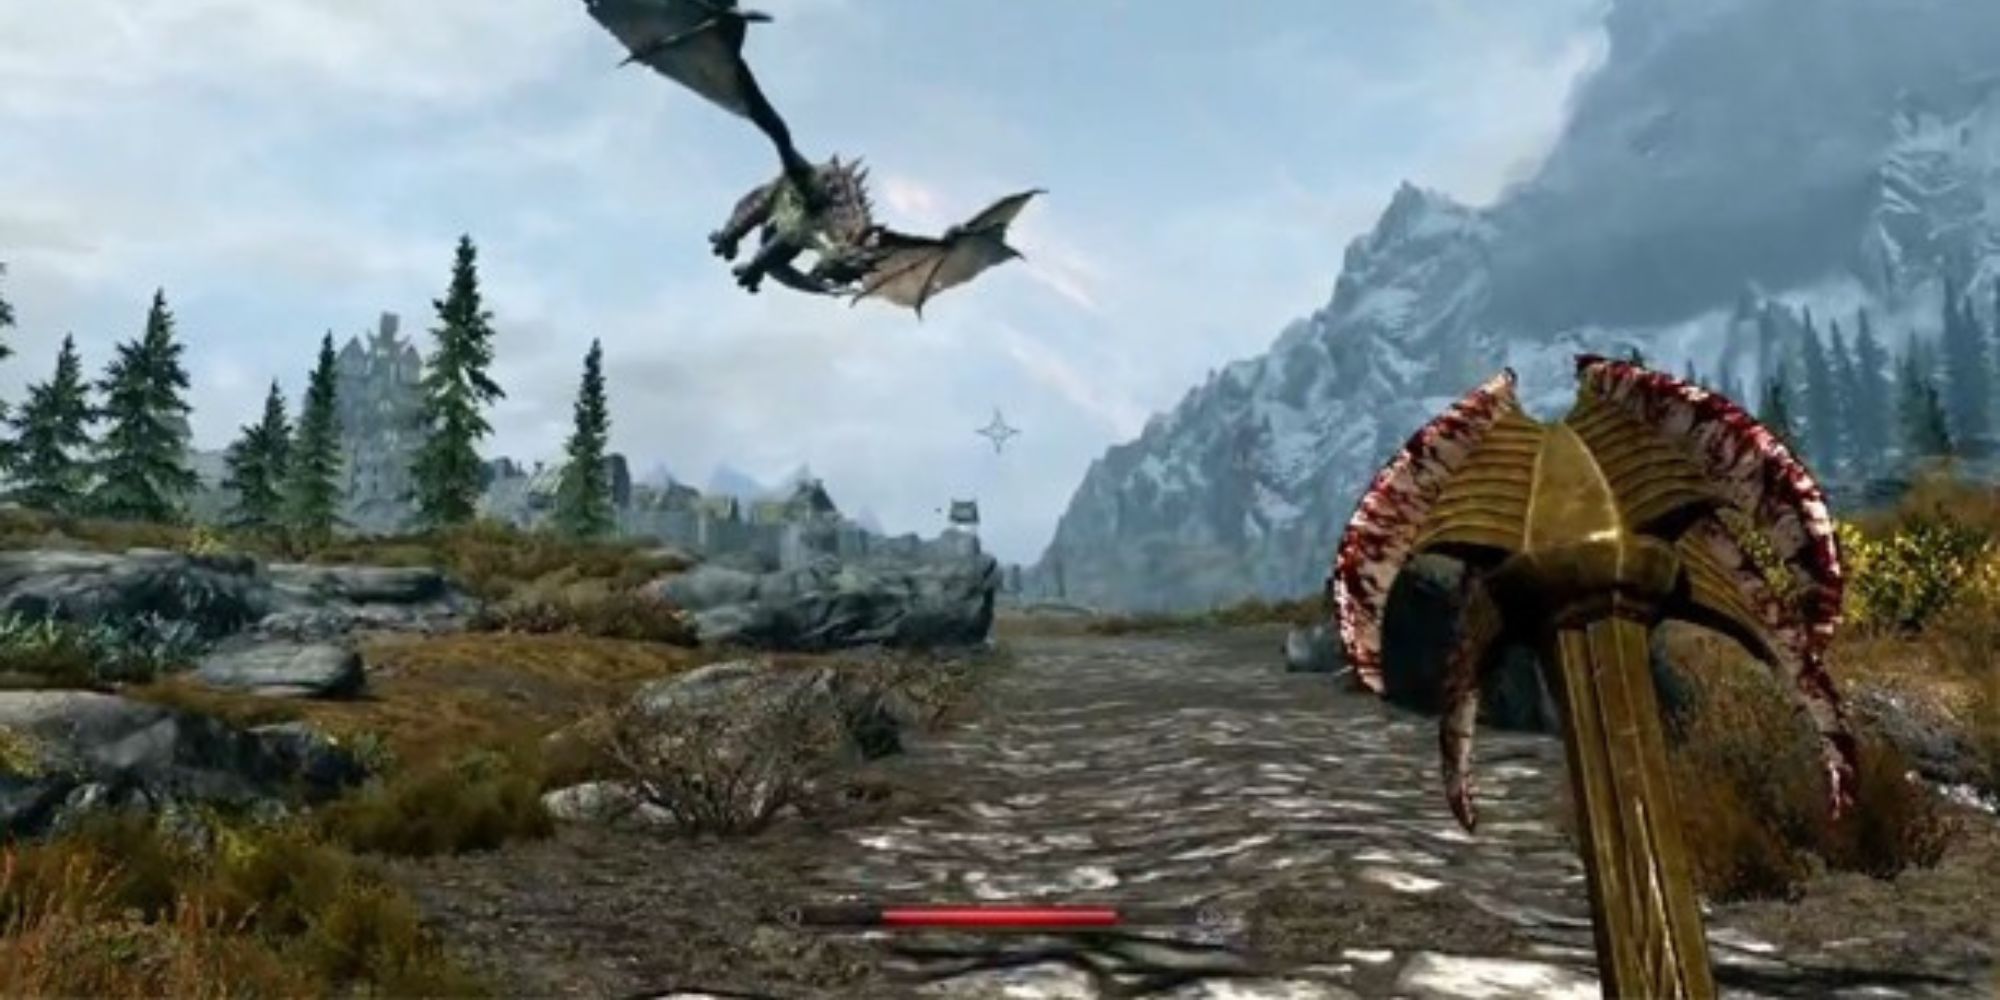 드래곤은 Skyrim의 산과 나무 사이에서 손이 닿지 않는 하늘을 날고, 플레이어는 피 모양의 철퇴를 들고 조약돌 위를 걷습니다.